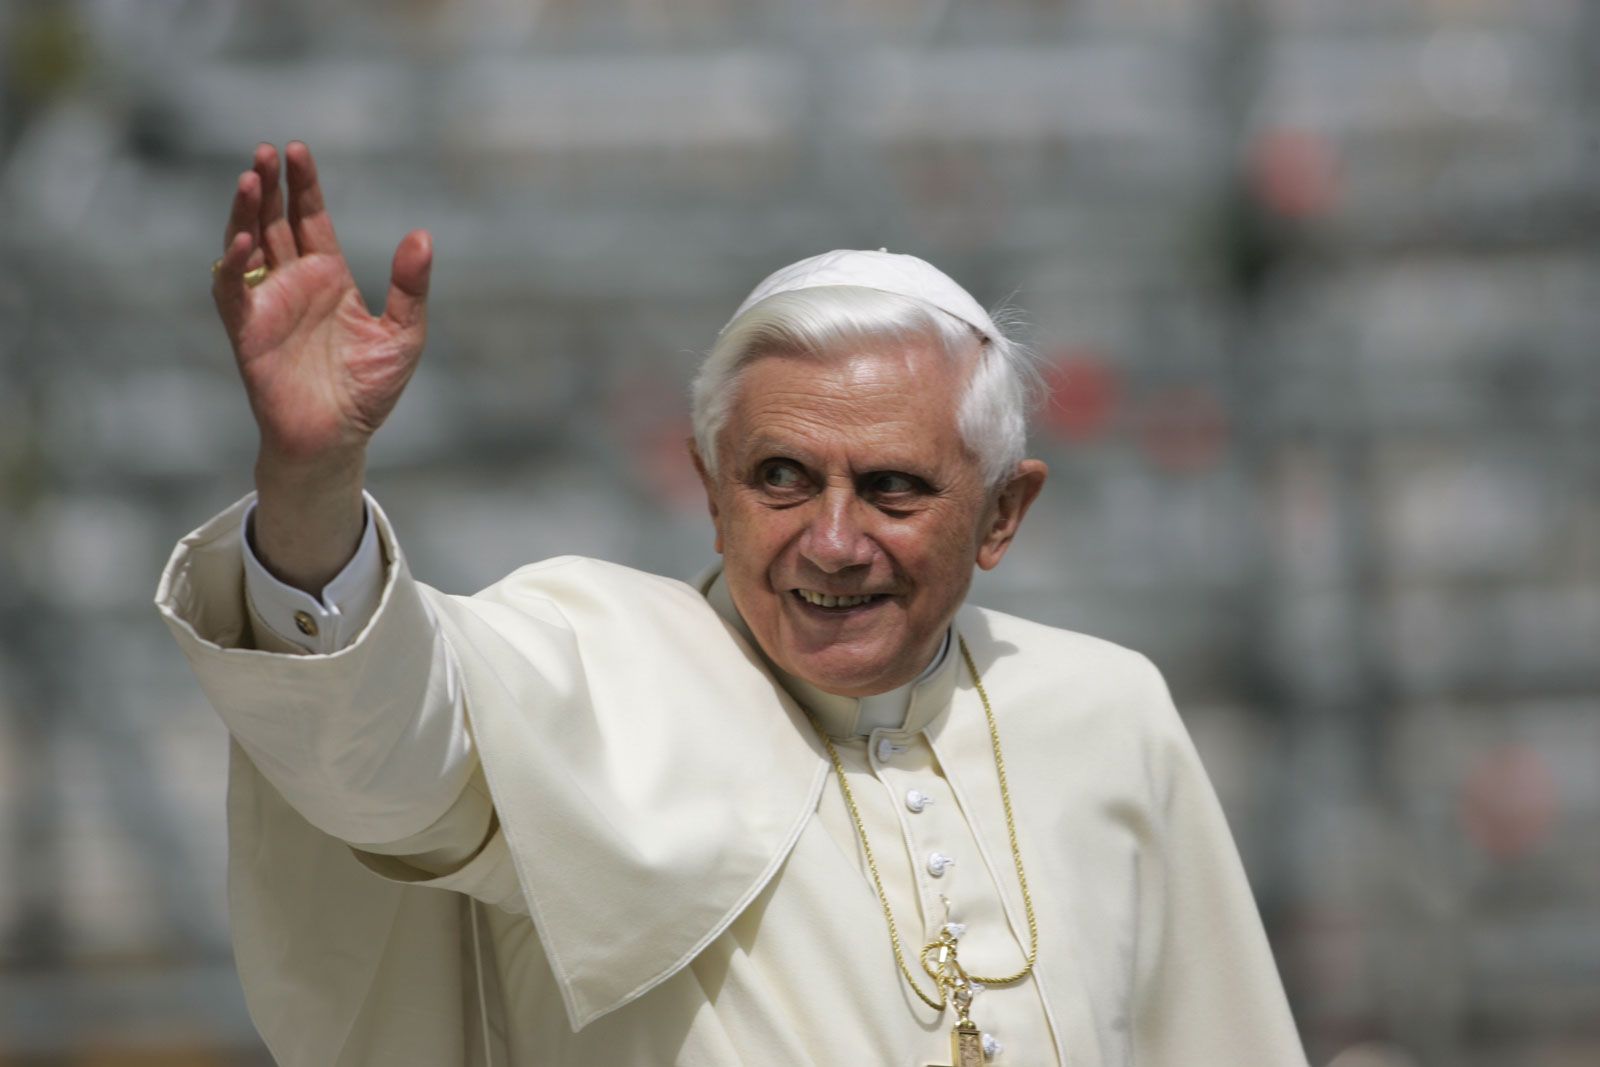 Benedict XVI | Biography, Resignation, Legacy, & Facts | Britannica